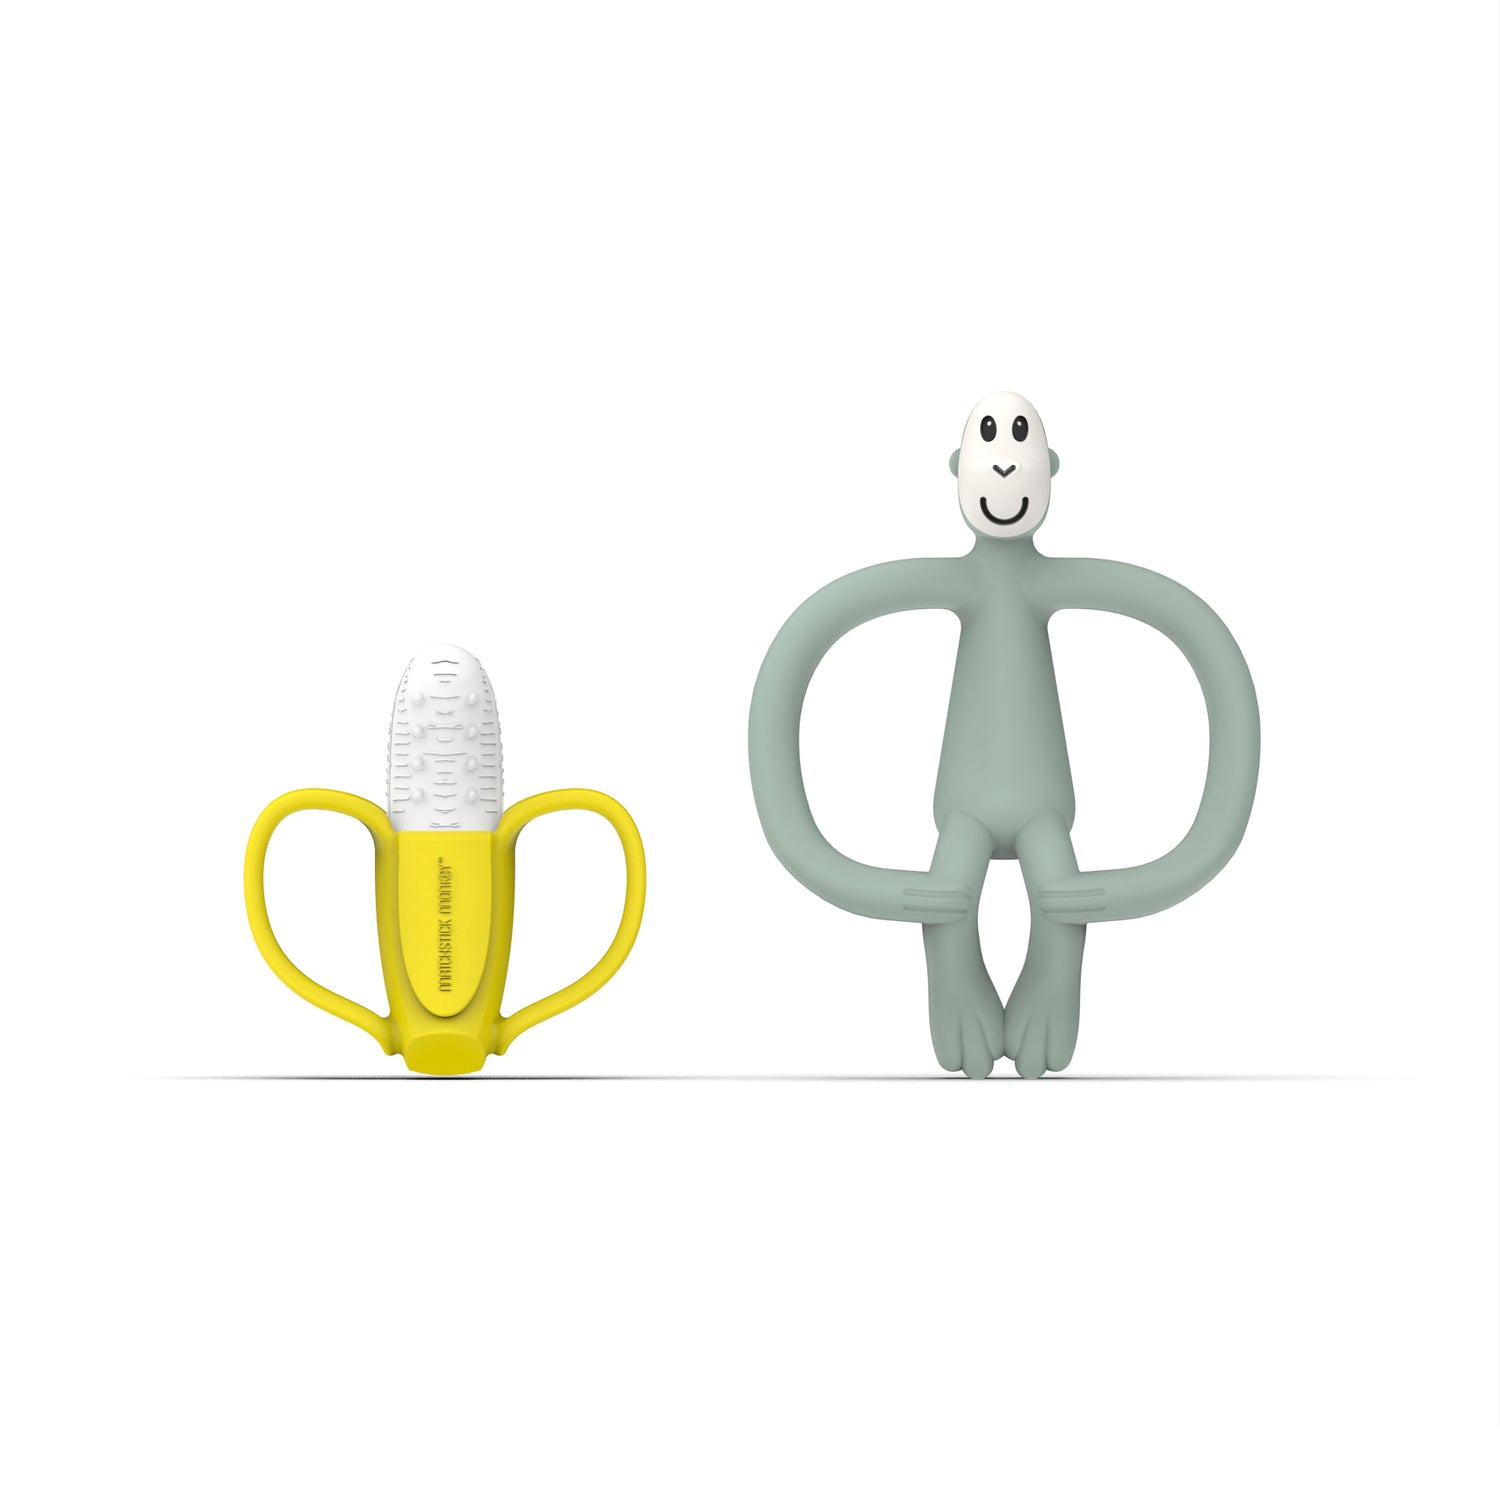 Banana &amp; Monkey Teething Gift Set